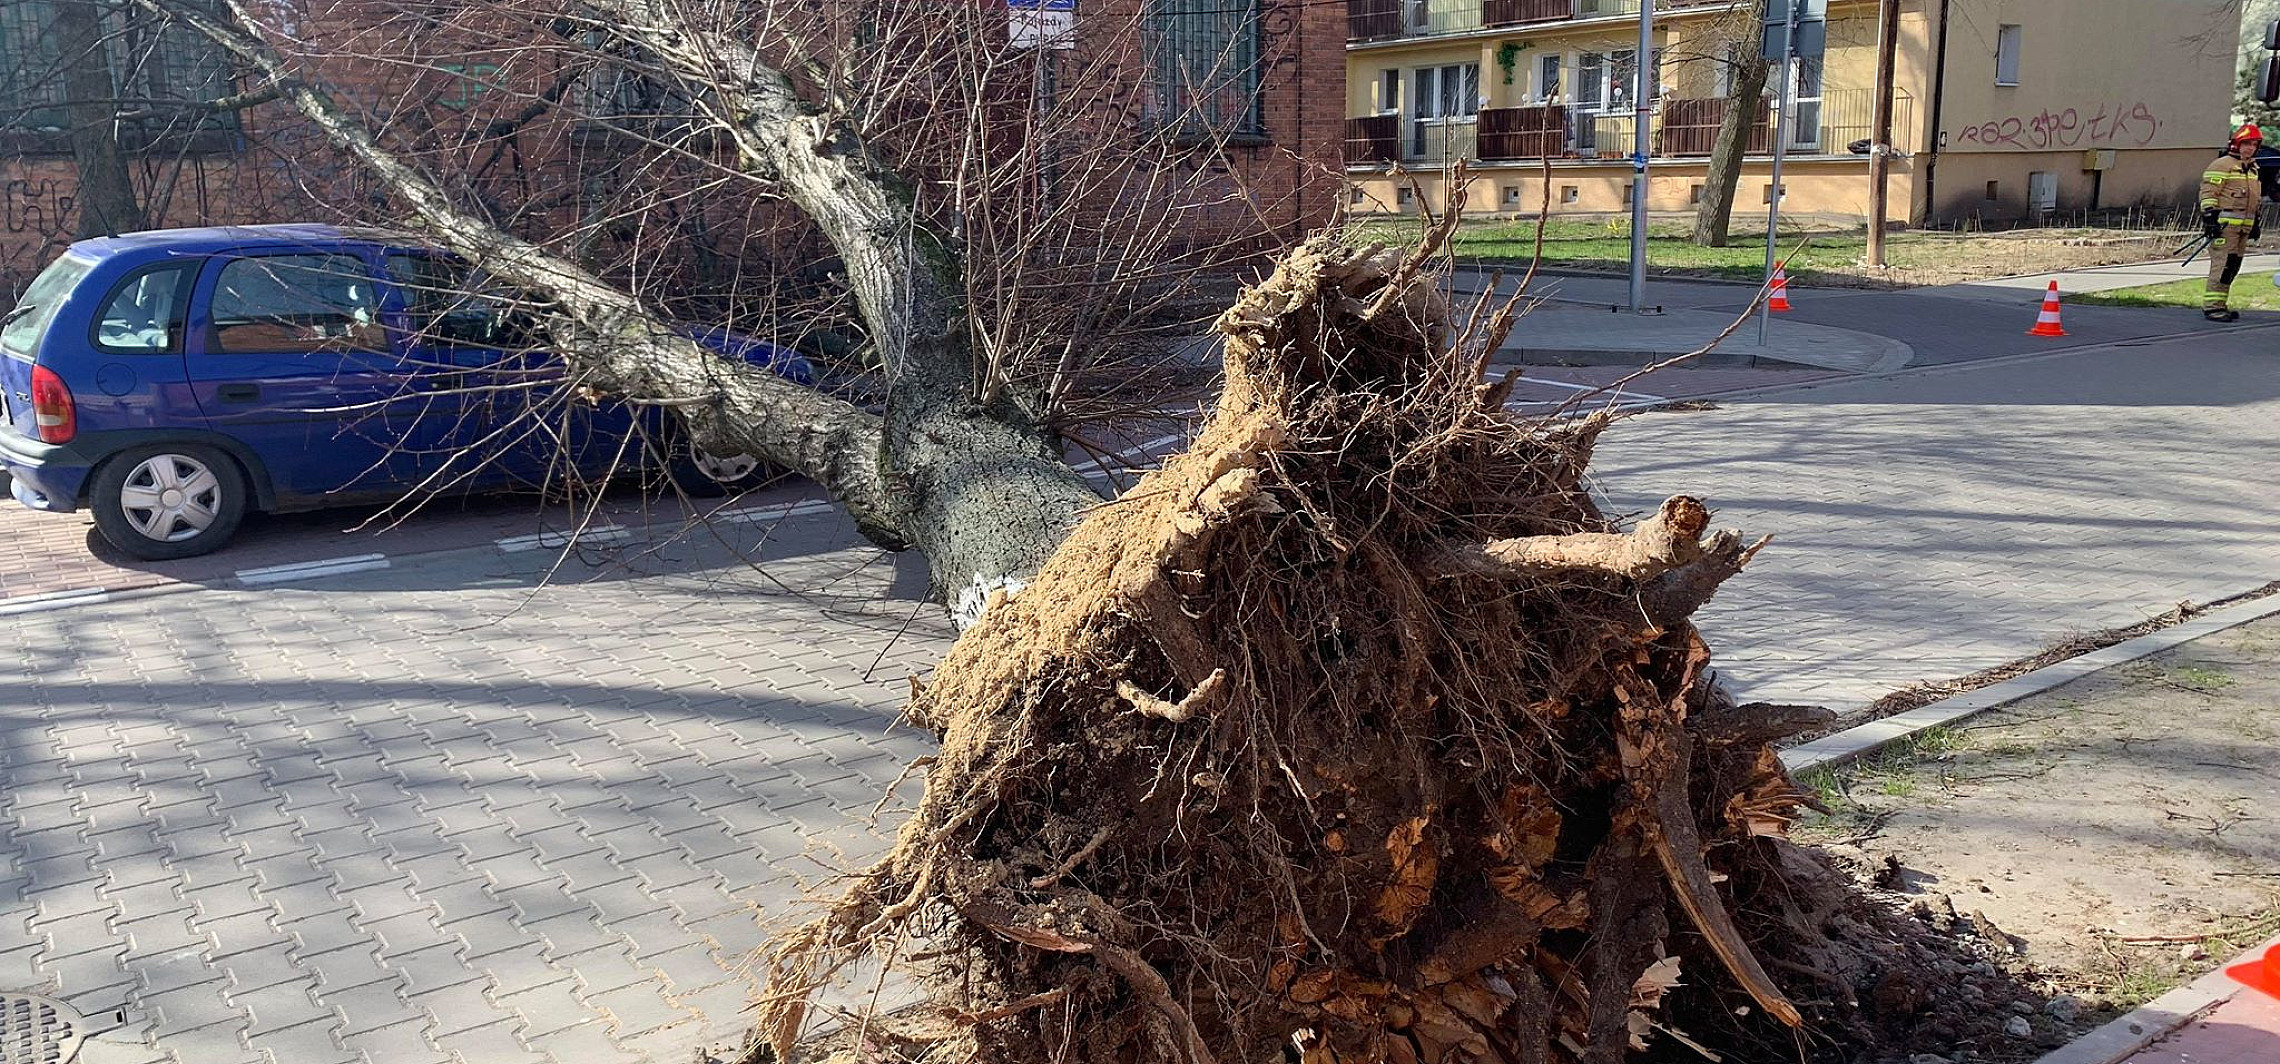 Inowrocław - Wiatr przewrócił drzewo na jezdnię i samochód